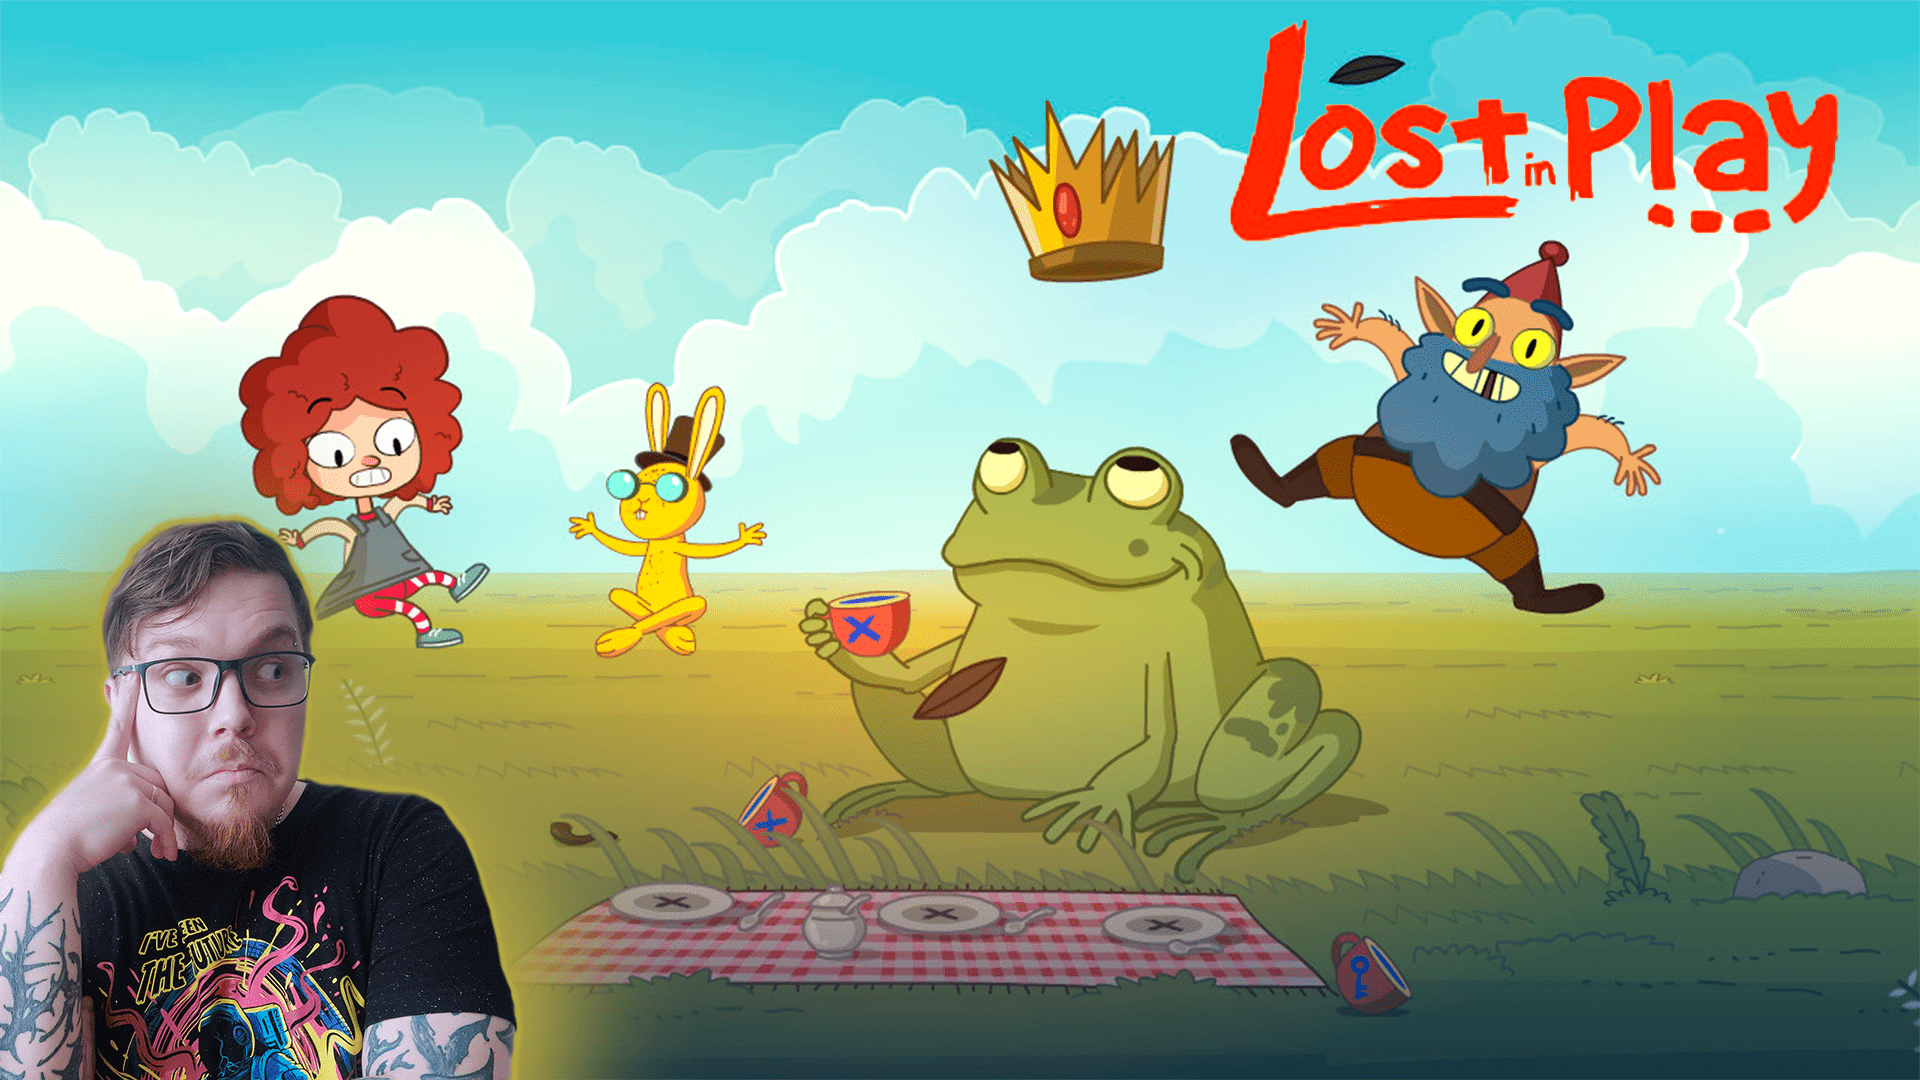 ВОТ ЭТО СОН! ➔ Lost in Play #1